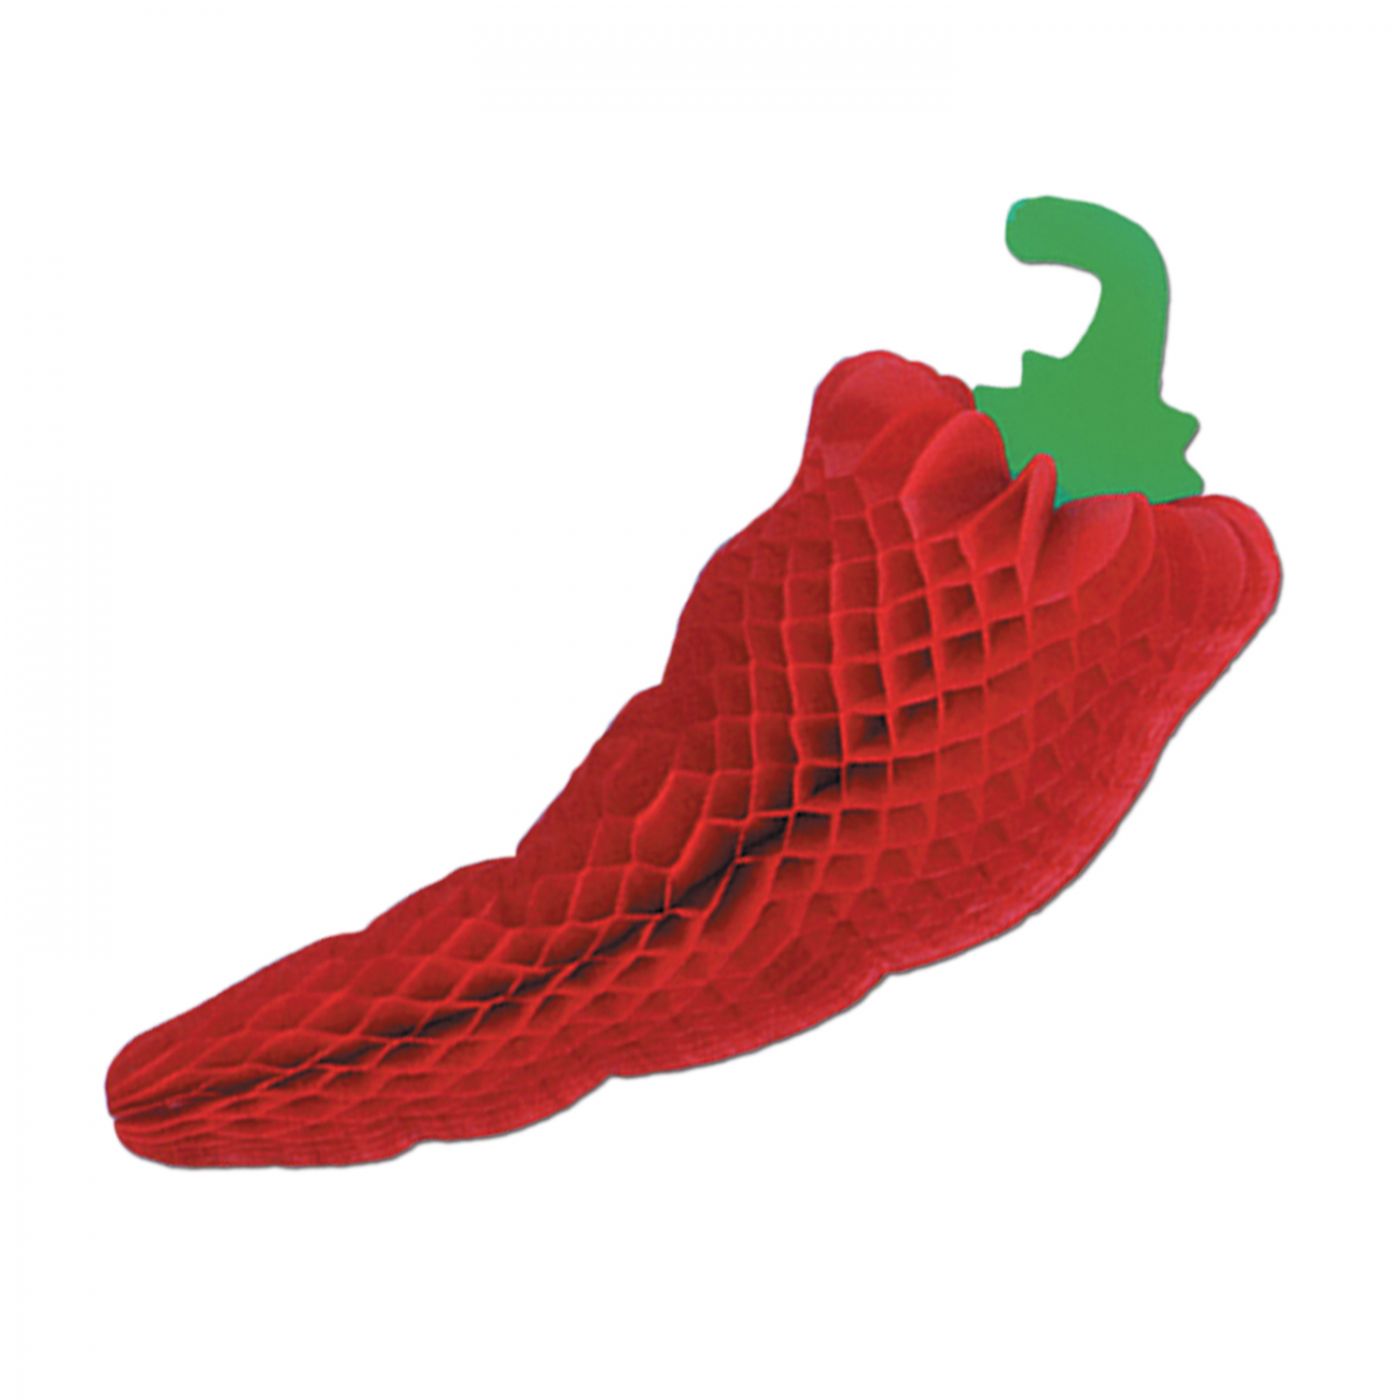 Tissue Chili Pepper image